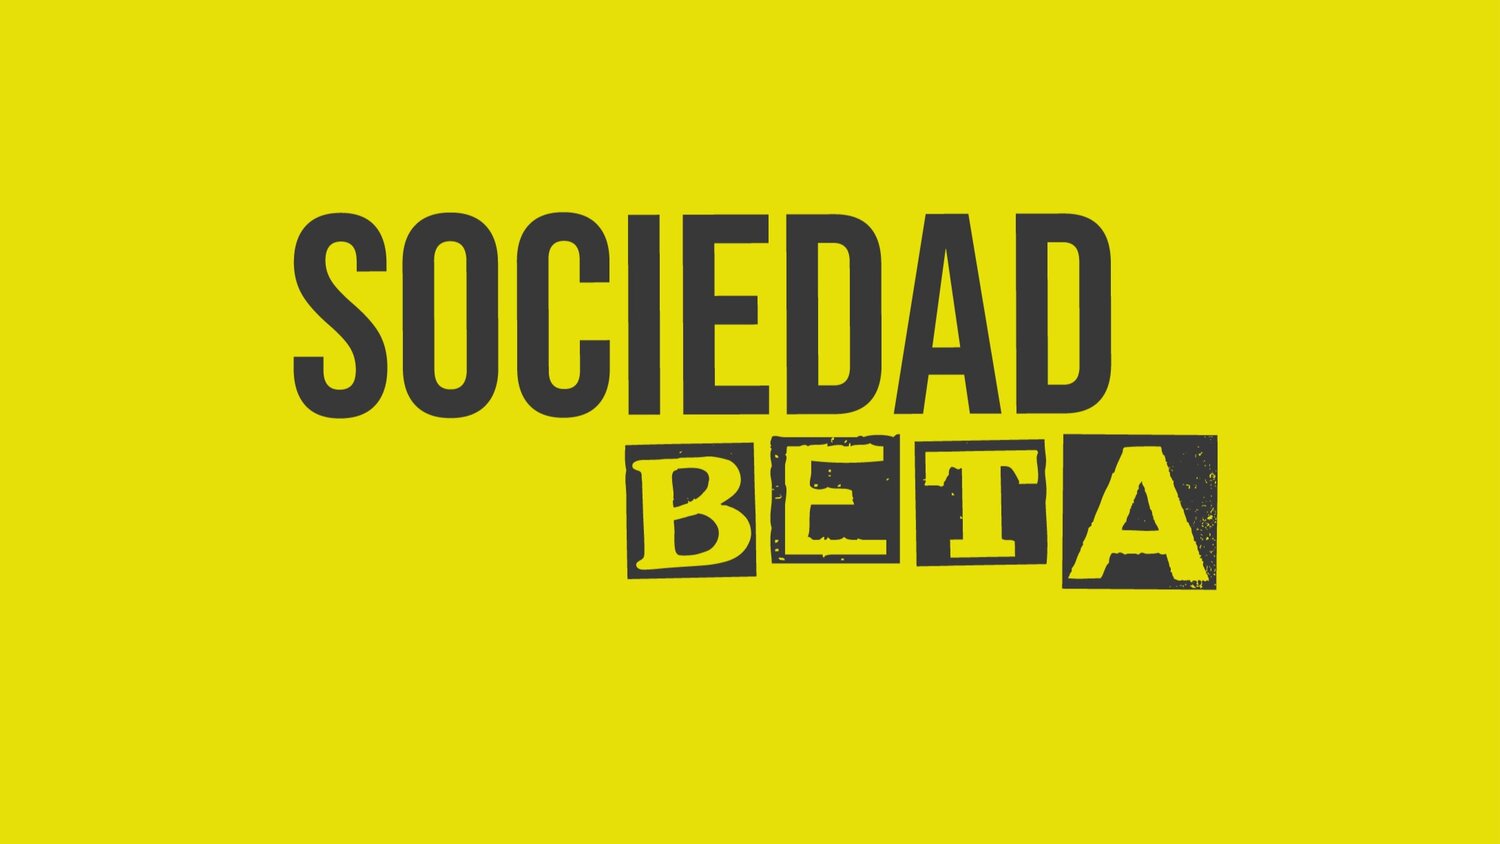 Sociedad Beta